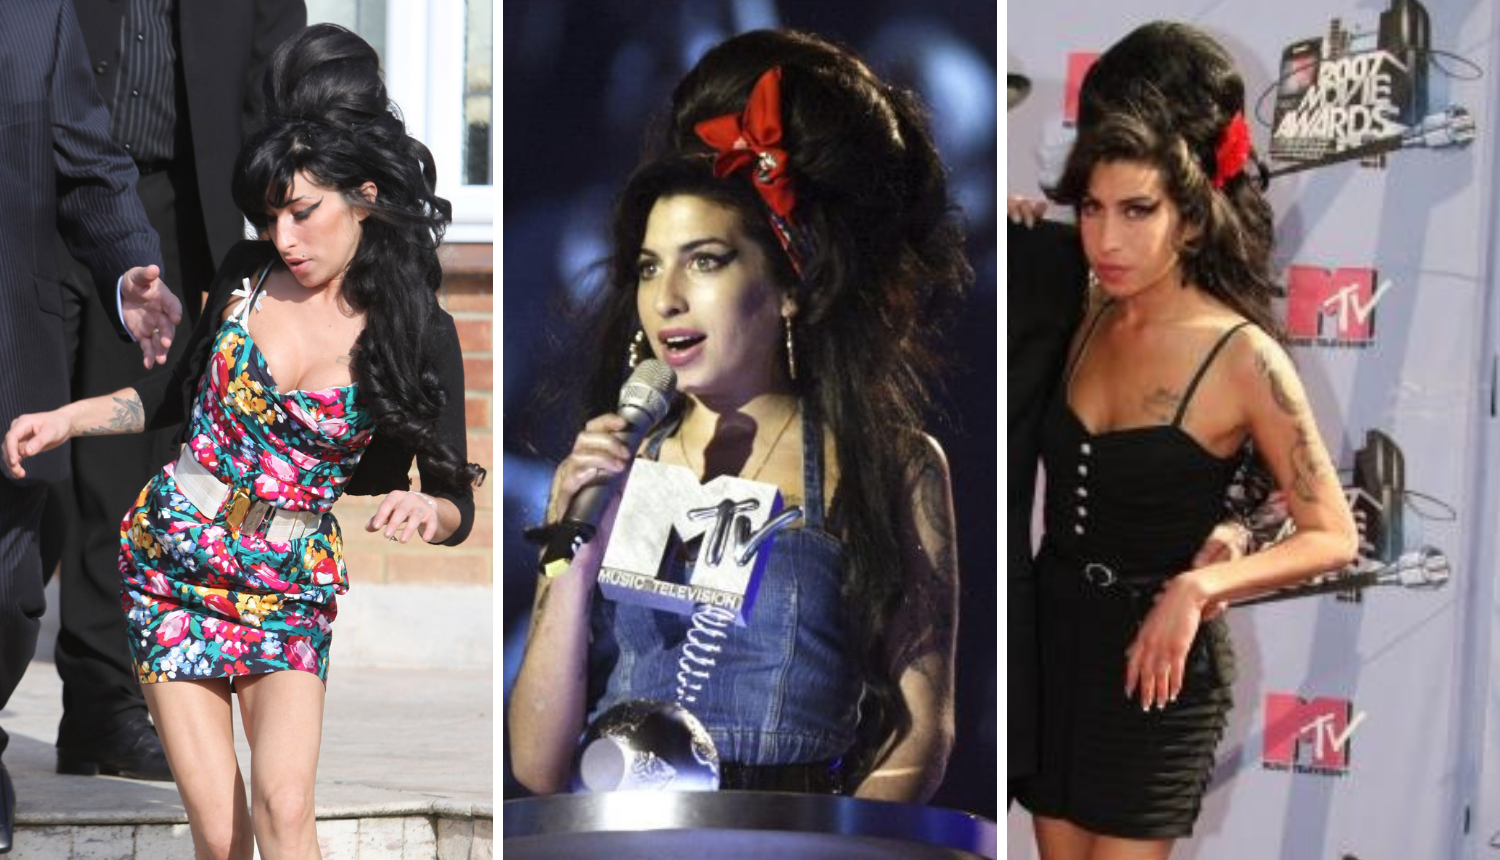 Roditelji Amy Winehouse prodat će njezine stvari: Skupe haljine i torbe idu u ruke obožavatelja...